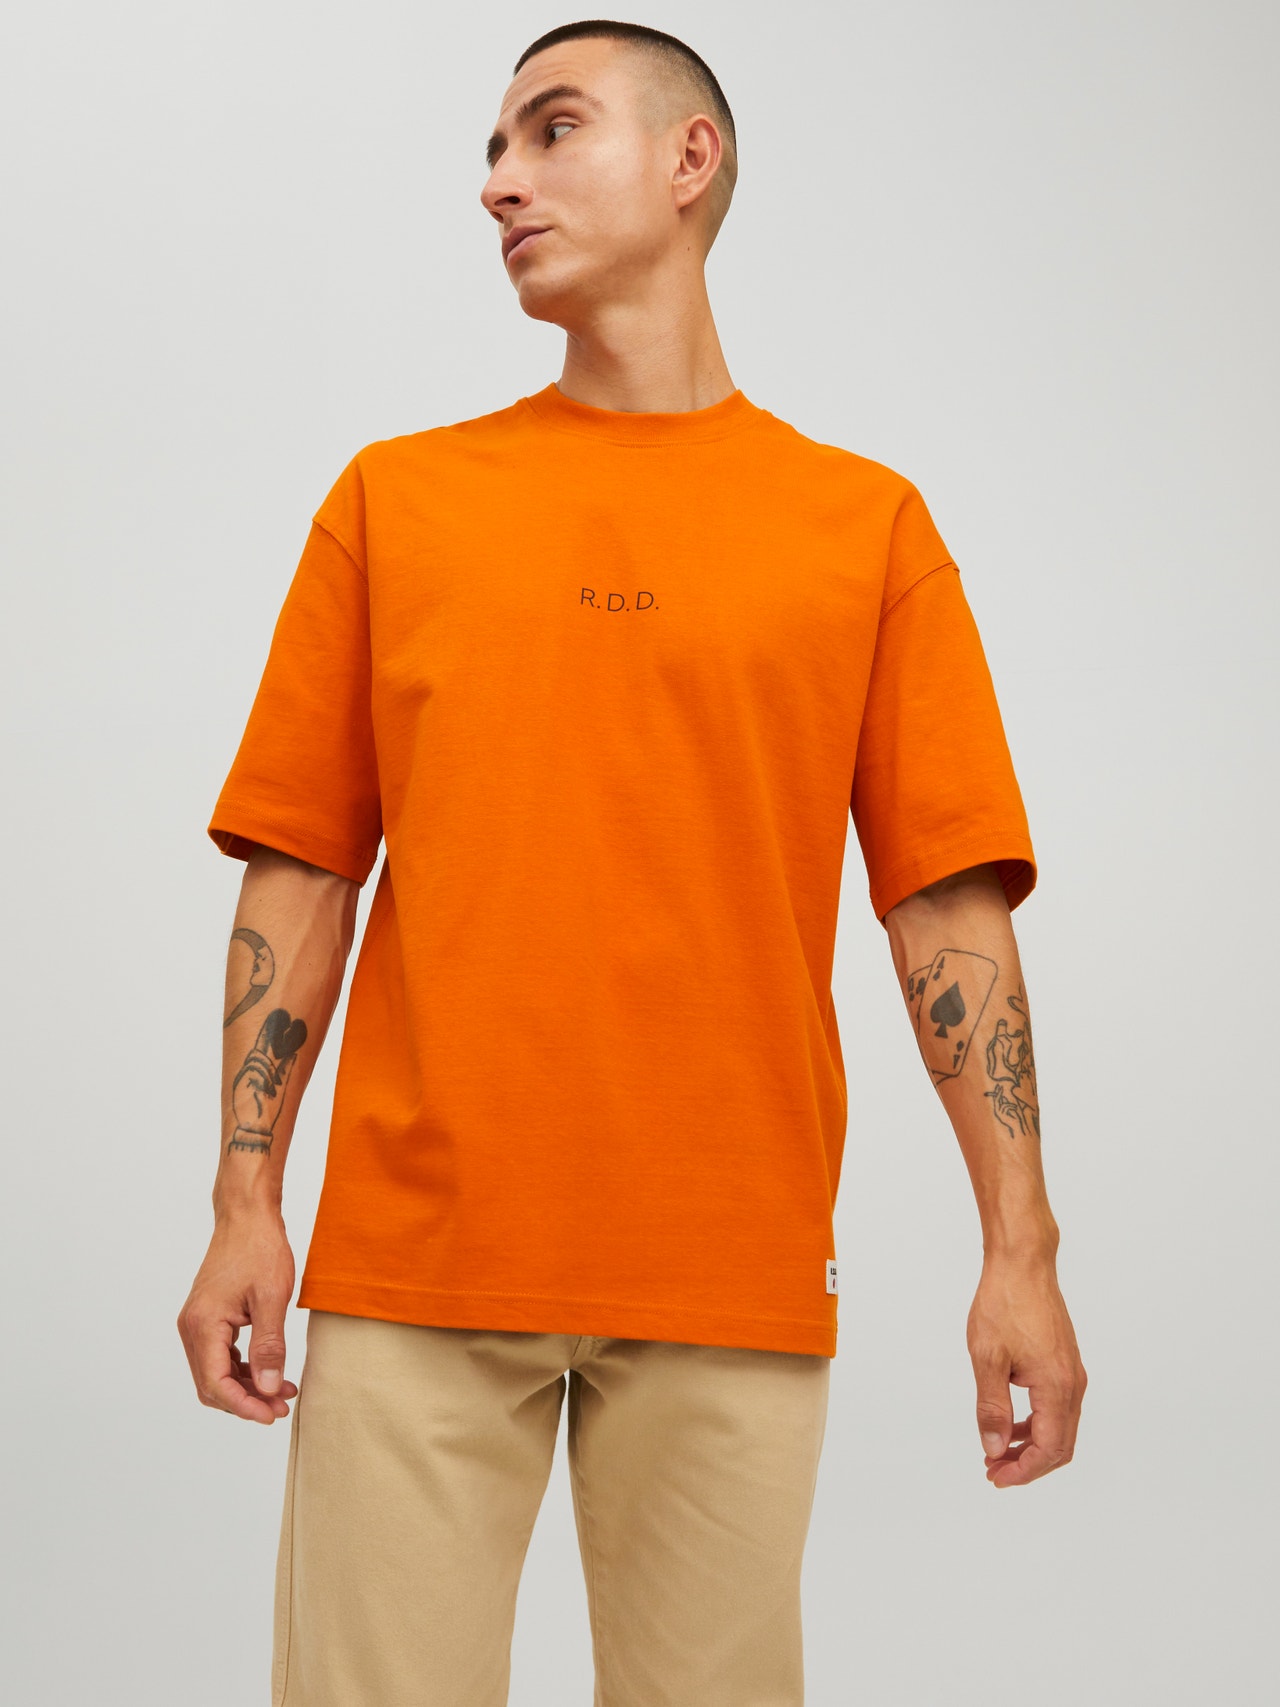 RDD Logo Crew Neck T-shirt, Dark Orange